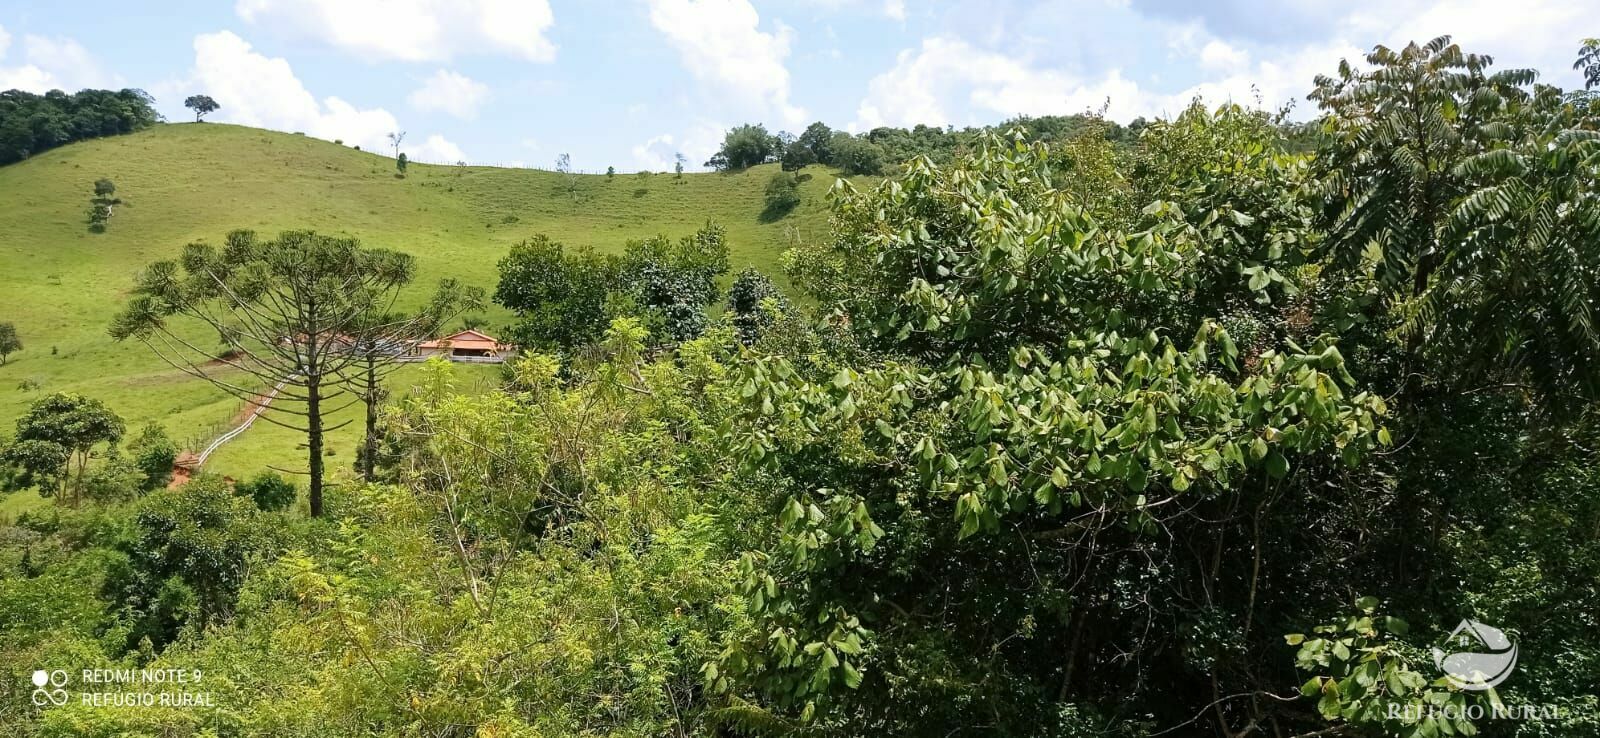 Sítio de 12 ha em São Luiz do Paraitinga, SP